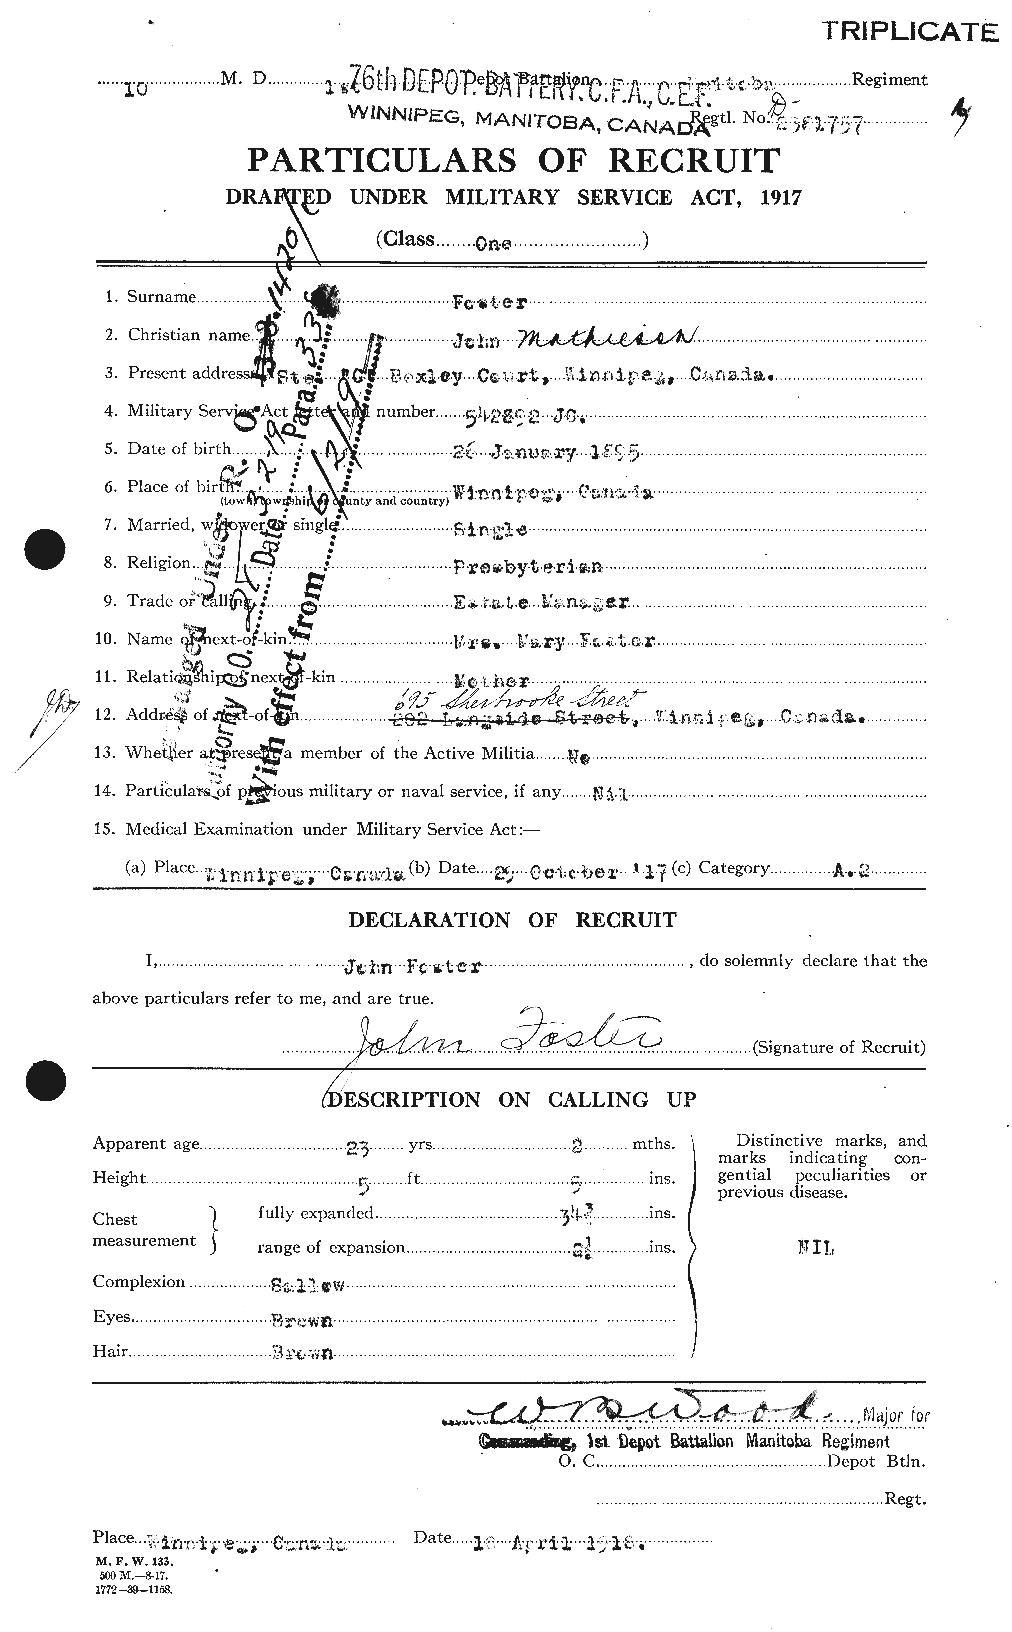 Dossiers du Personnel de la Première Guerre mondiale - CEC 333366a